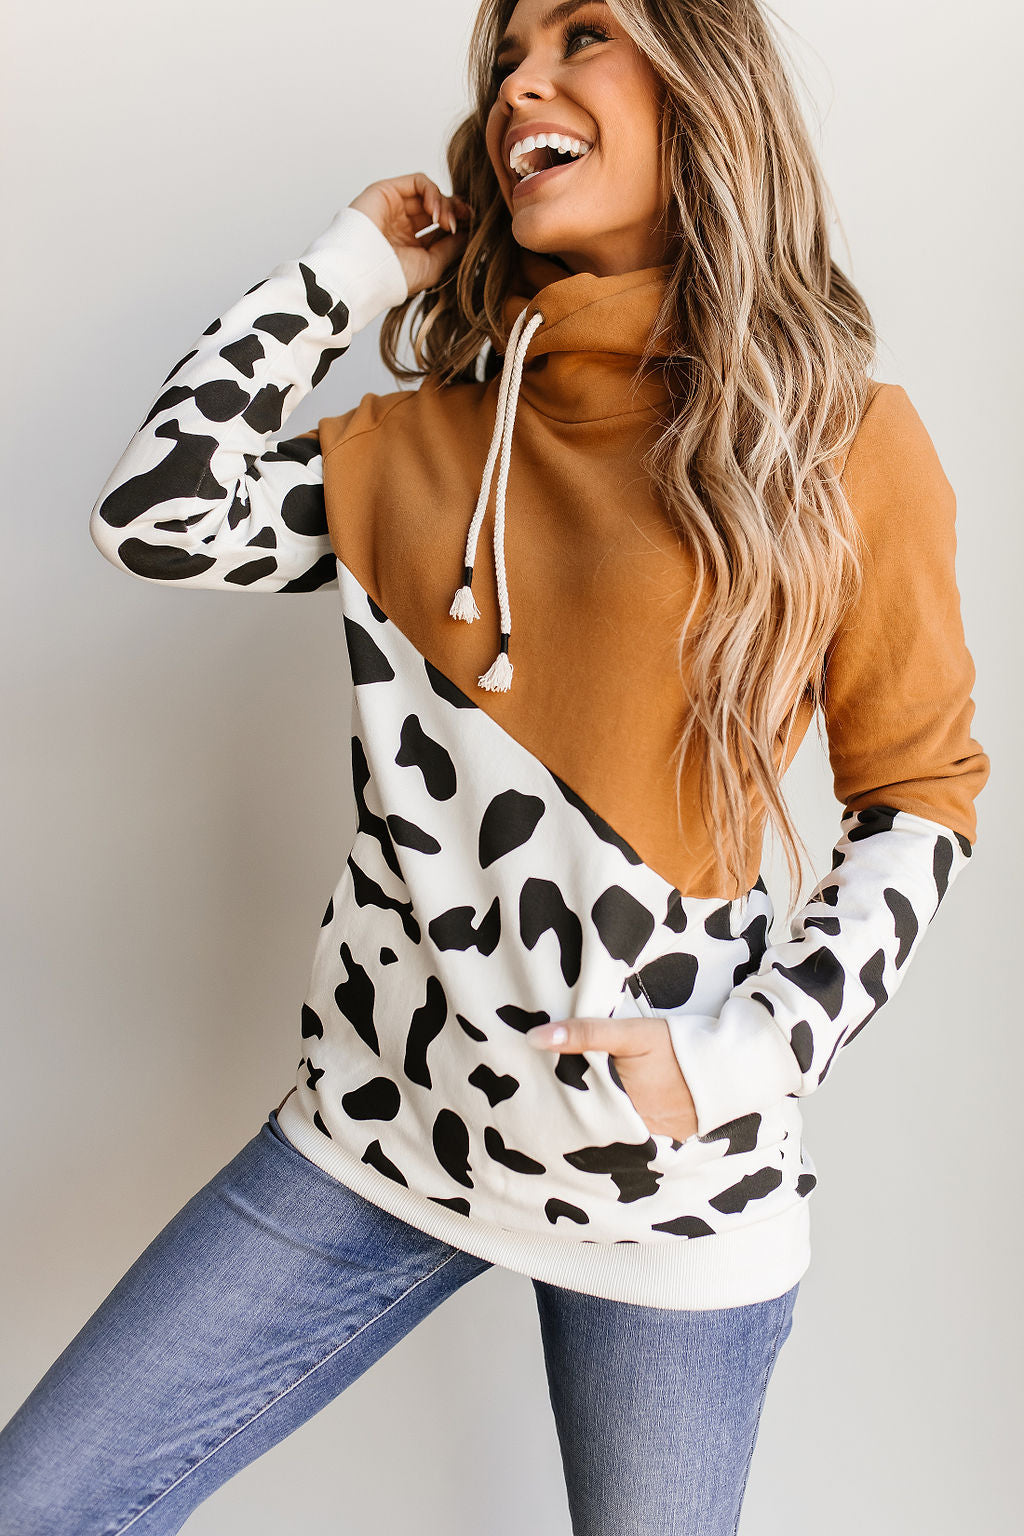 Singlehood Sweatshirt - Yeehaw - Mindy Mae's Marketcomfy cute hoodies